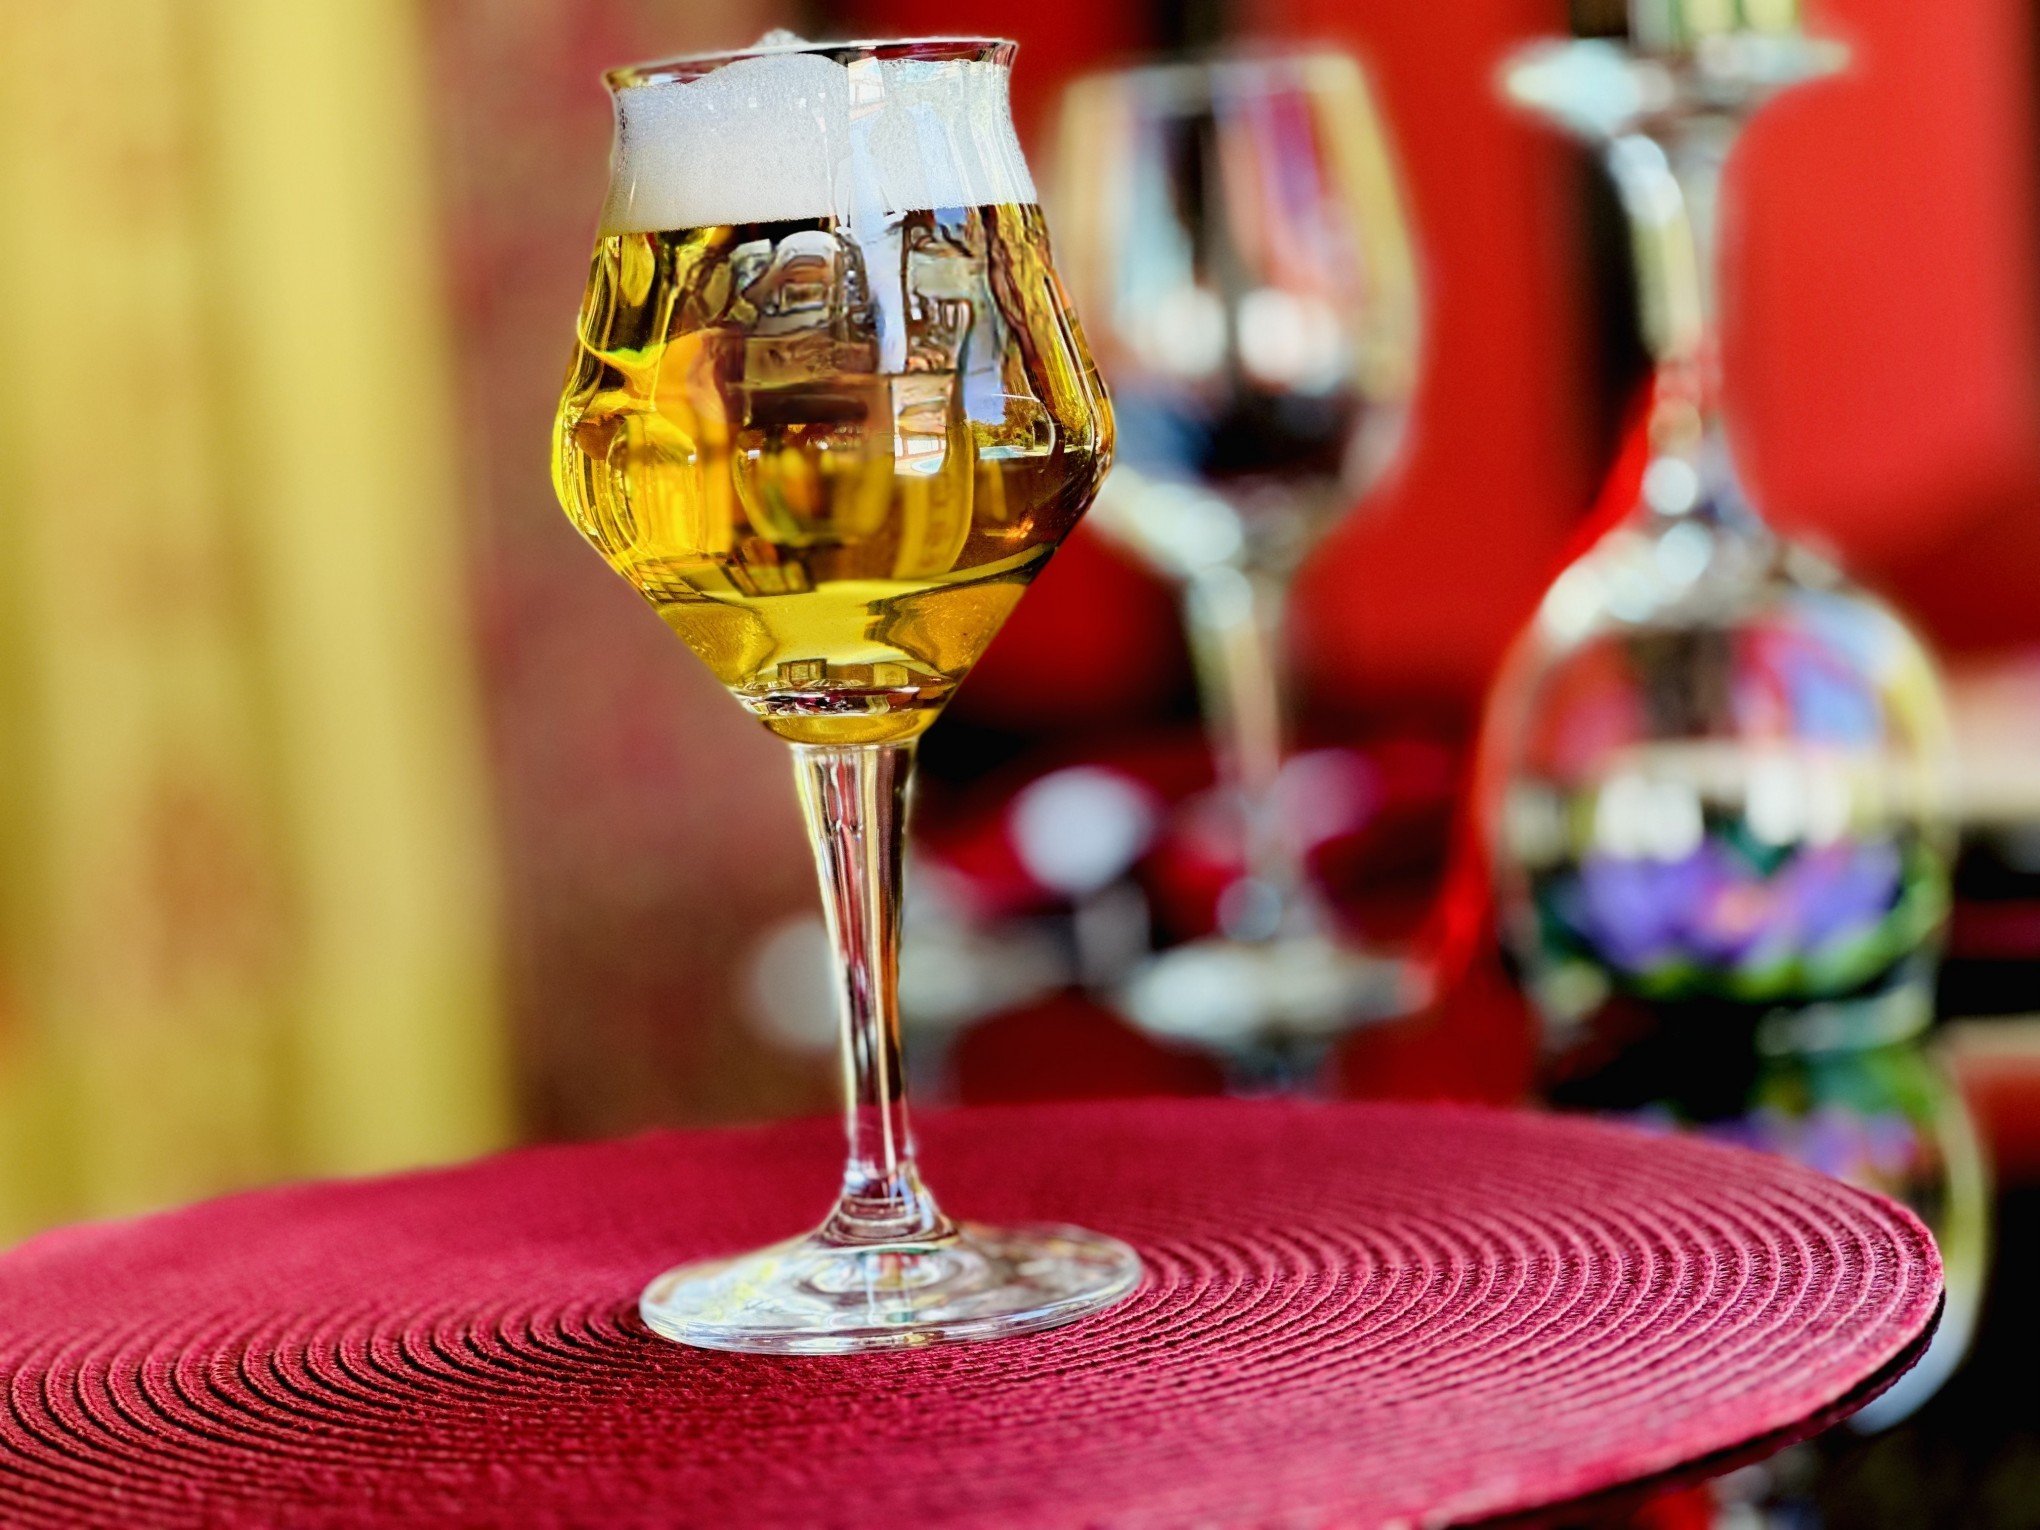 ANO-NOVO TIBETANO: Lozar terá cerveja exclusiva; saiba qual o estilo e como será o evento